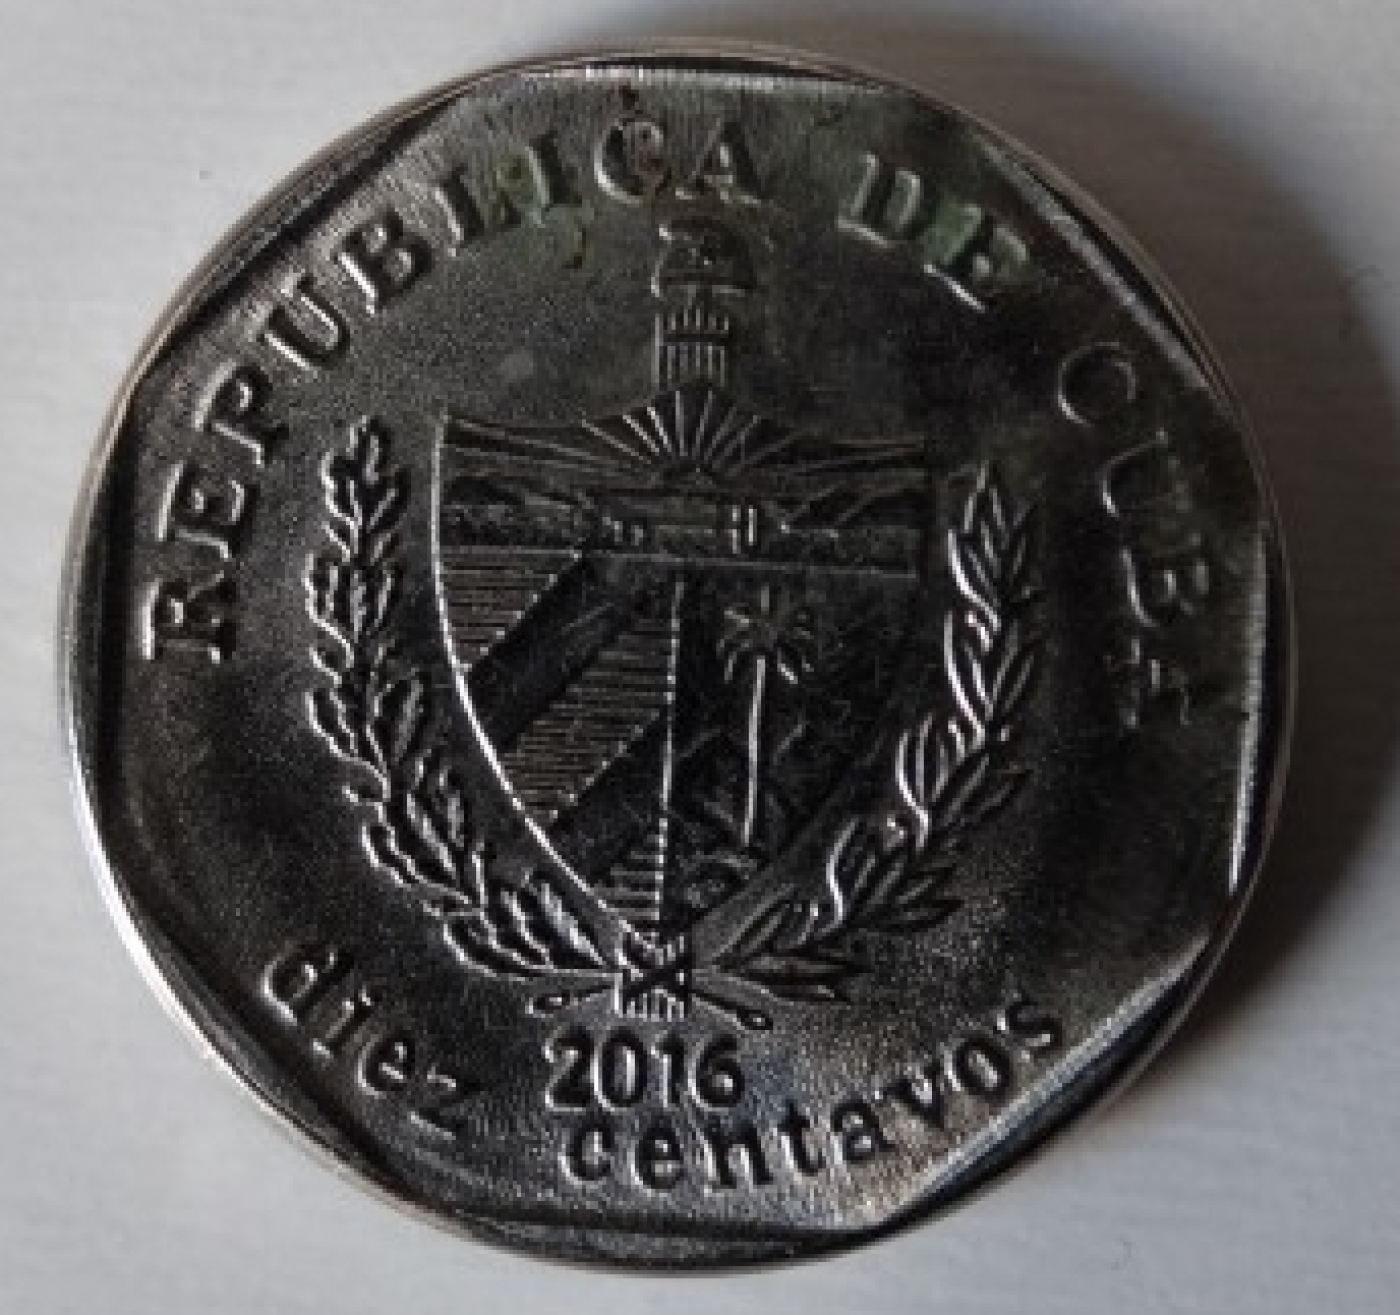 10 Centavos 2016 Cuban Convertible Peso 1994 Present Cuba Coin 42235